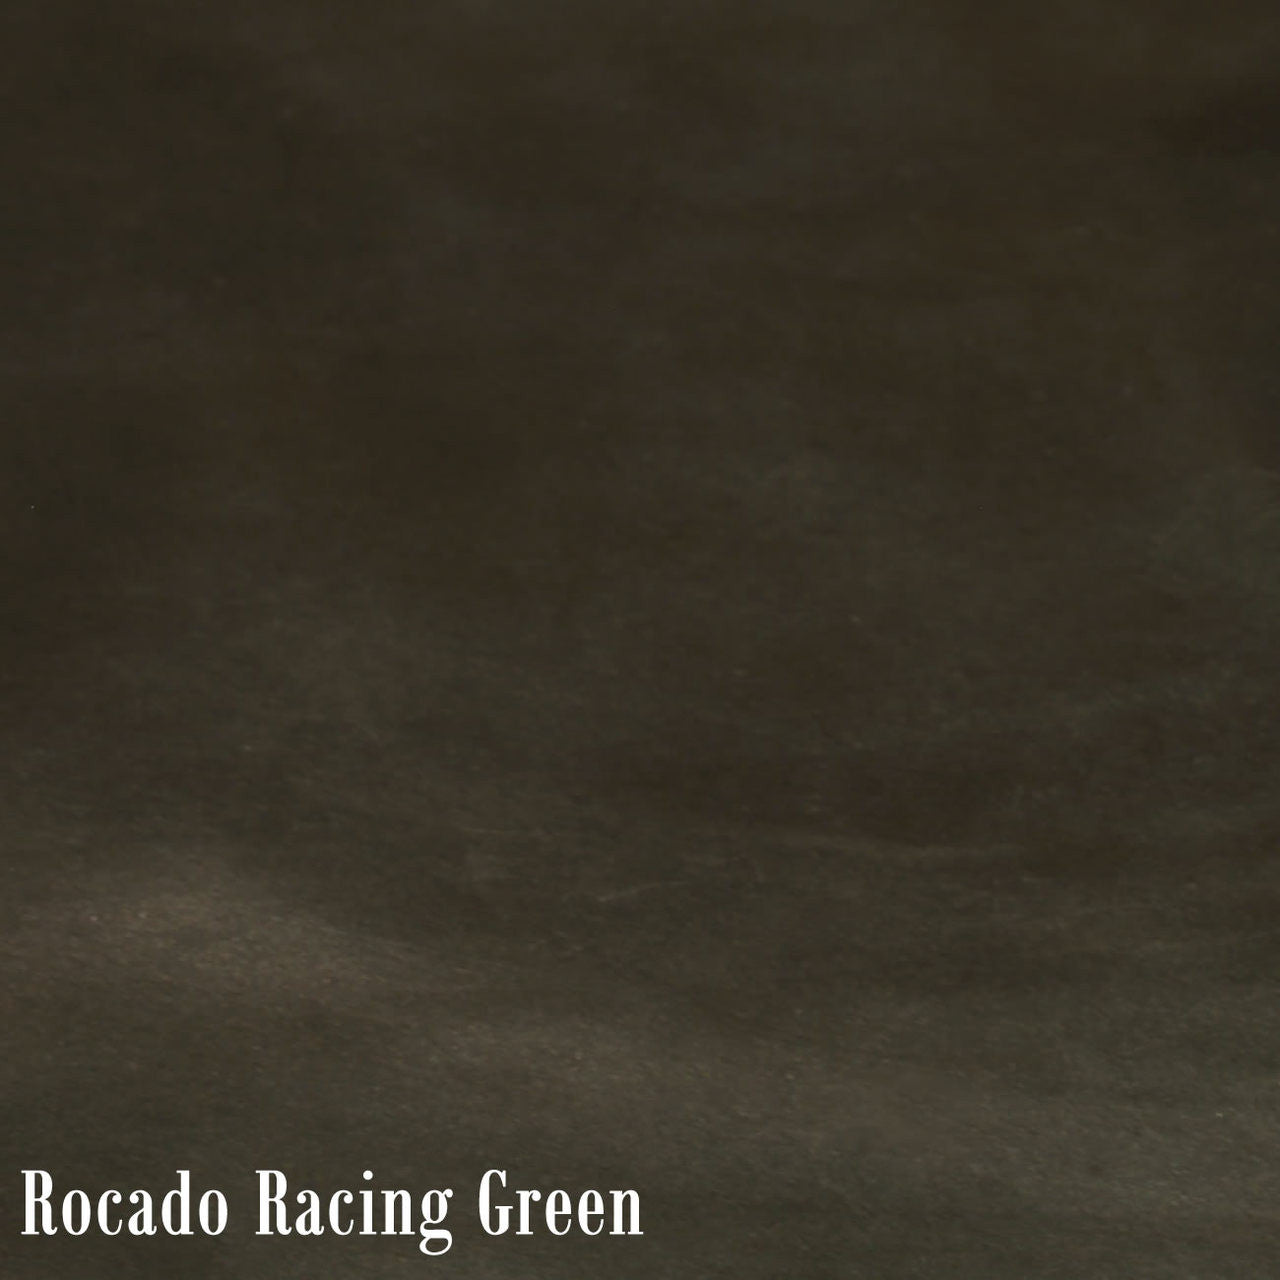 Rocado Racing Green